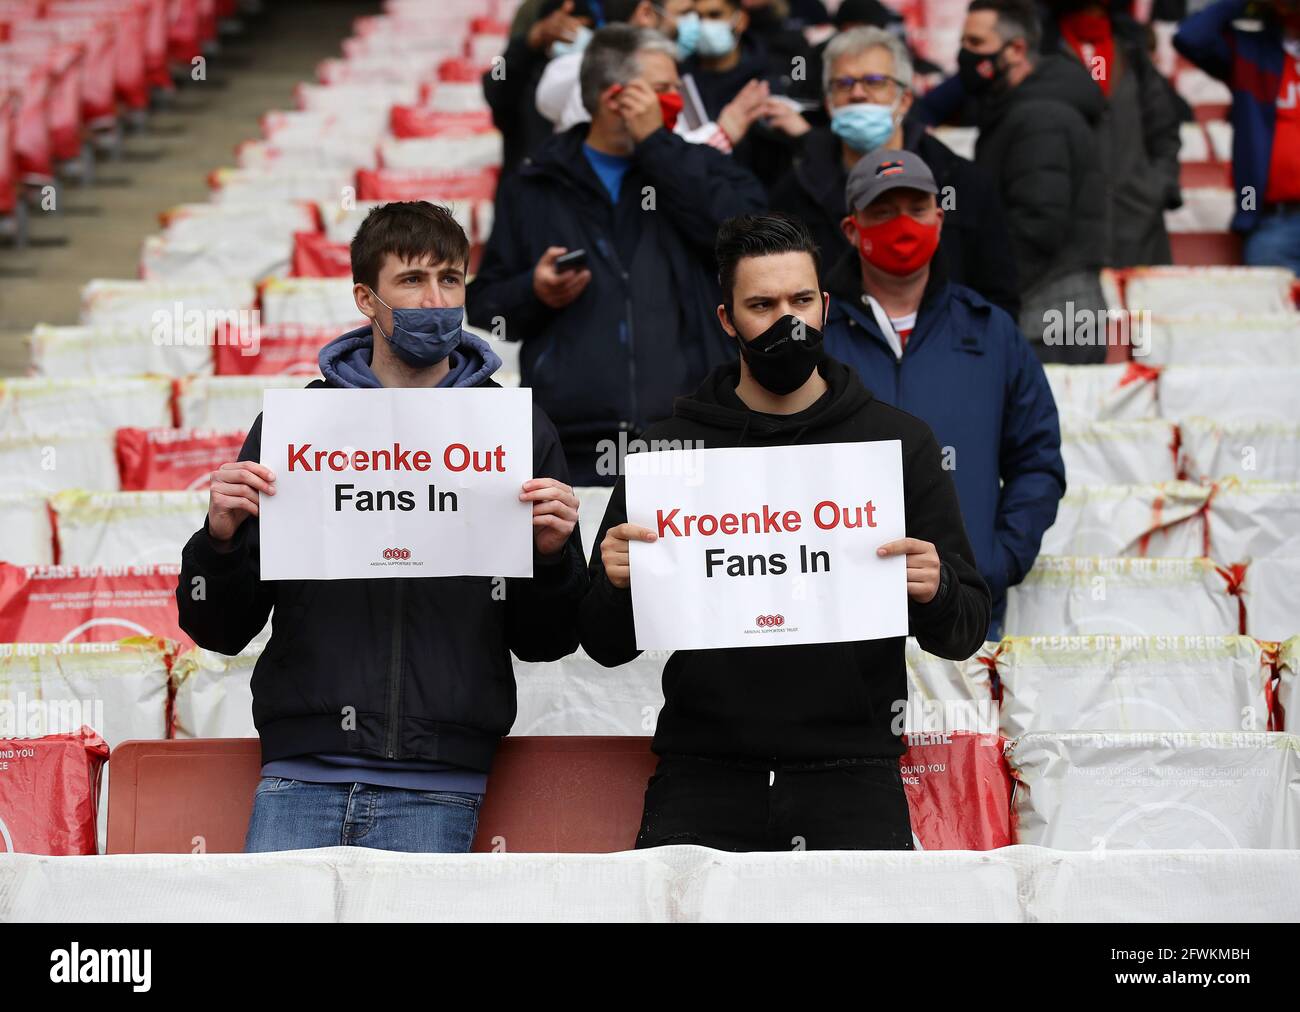 Londra, Inghilterra, 23 maggio 2021. I fan dell'Arsenal protestano contro Stan Kroenke durante la partita della Premier League all'Emirates Stadium di Londra. Il credito immagine dovrebbe essere: David Klein / Sportimage Credit: Sportimage/Alamy Live News Foto Stock